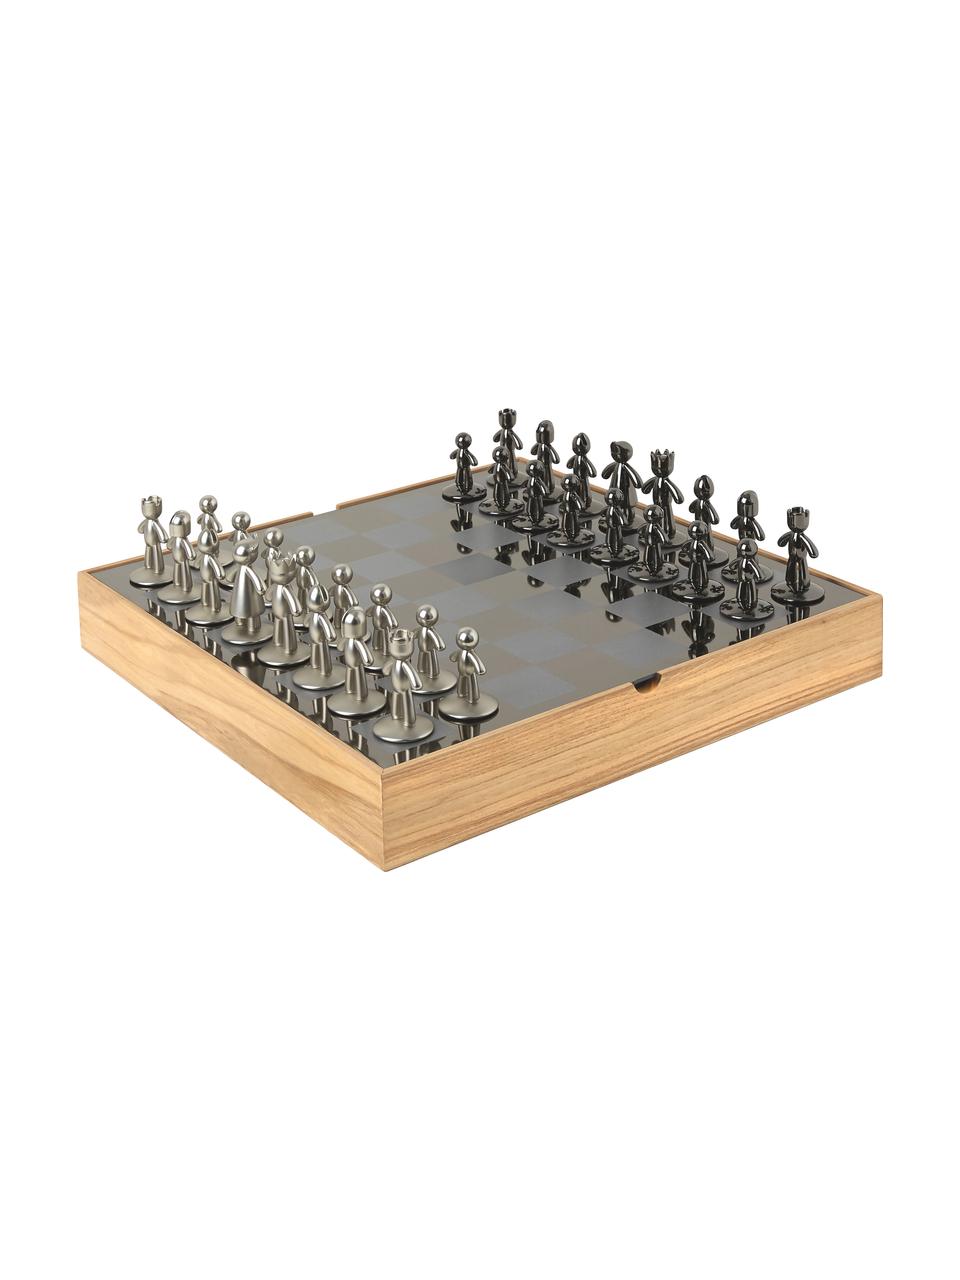 Juego de ajedrez Buddy, 33 pzas., Caja: madera de fresno, Fresno, gris, plateado, An 33 x Al 4 cm